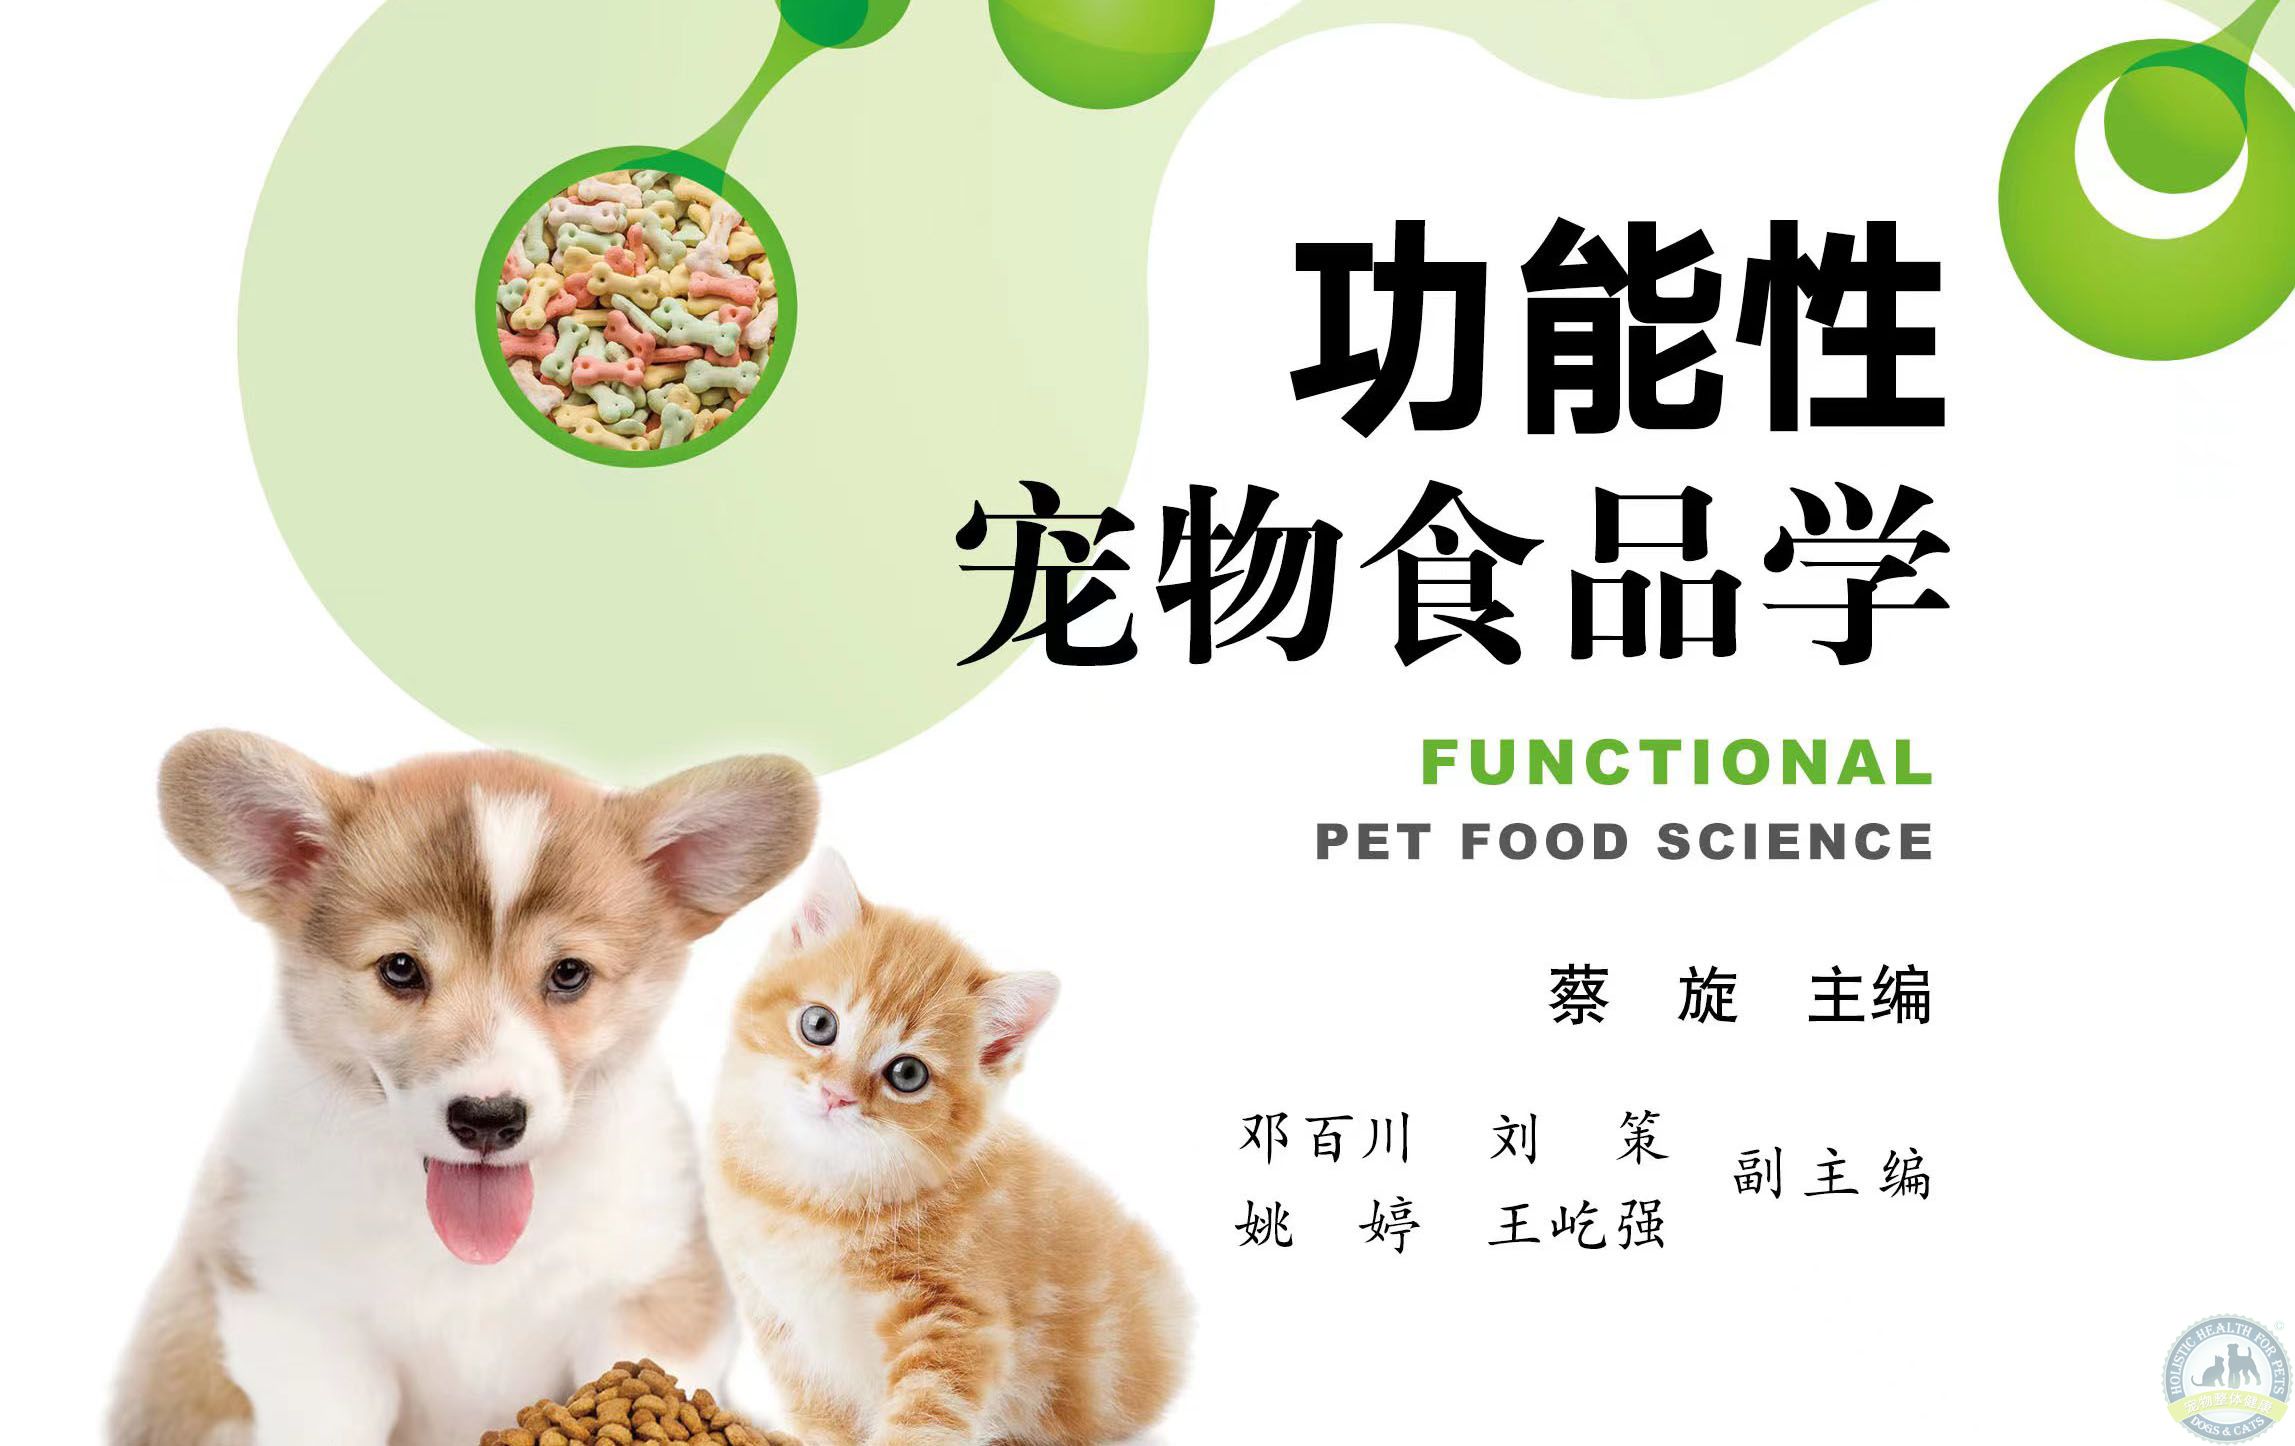 《功能性宠物食品学》中国农业出版社 20